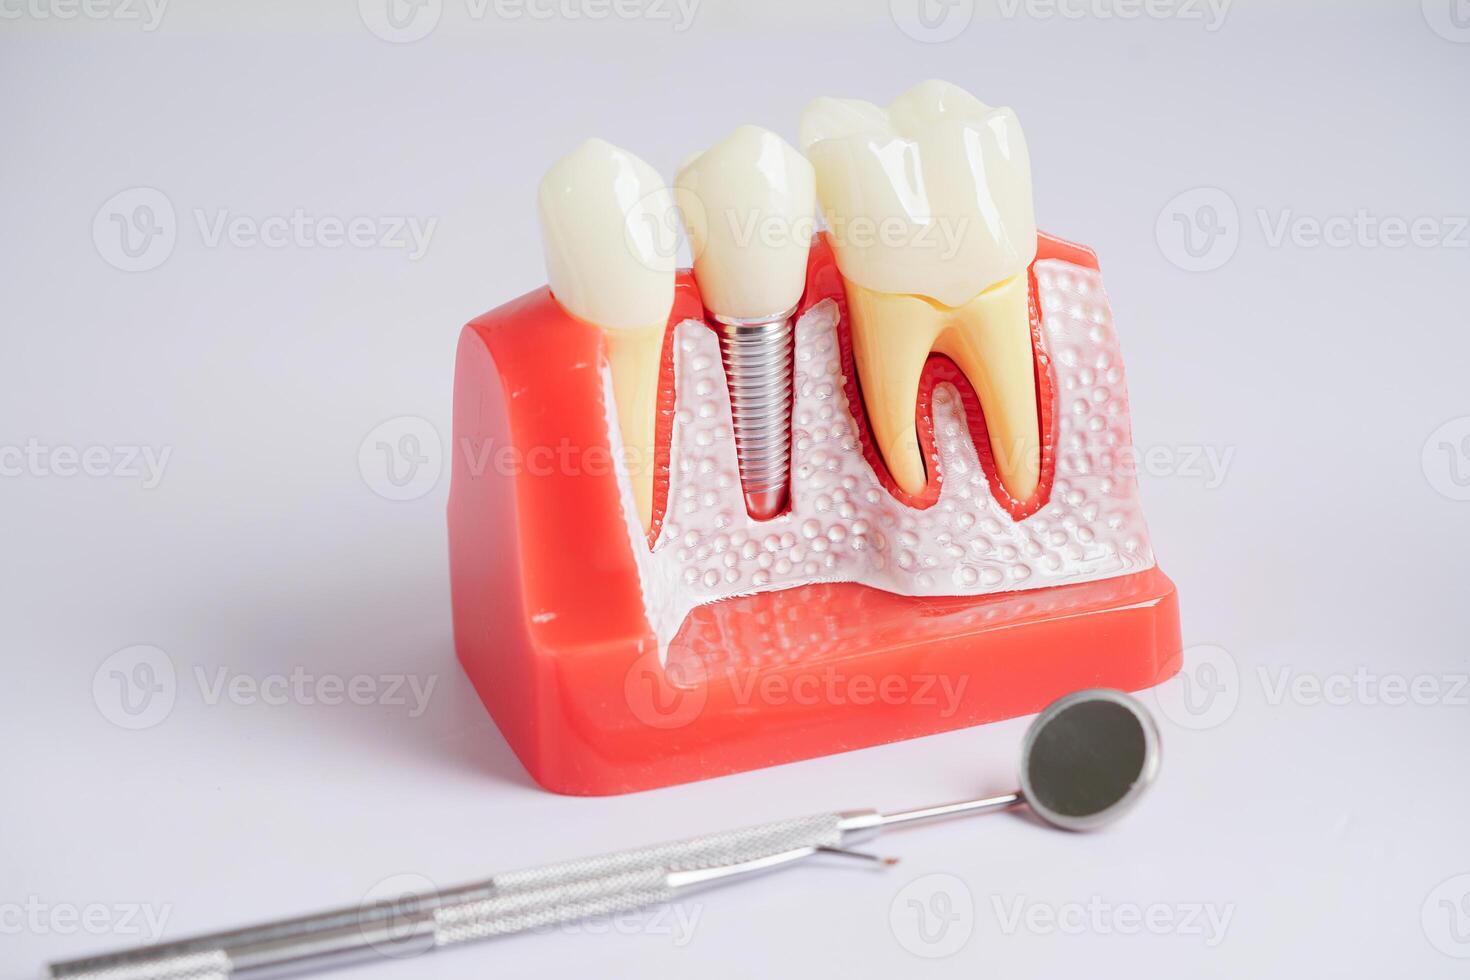 dentaire implant, artificiel dent les racines dans mâchoire, racine canal de dentaire traitement, gencive maladie, les dents modèle pour dentiste en train d'étudier à propos dentisterie. photo